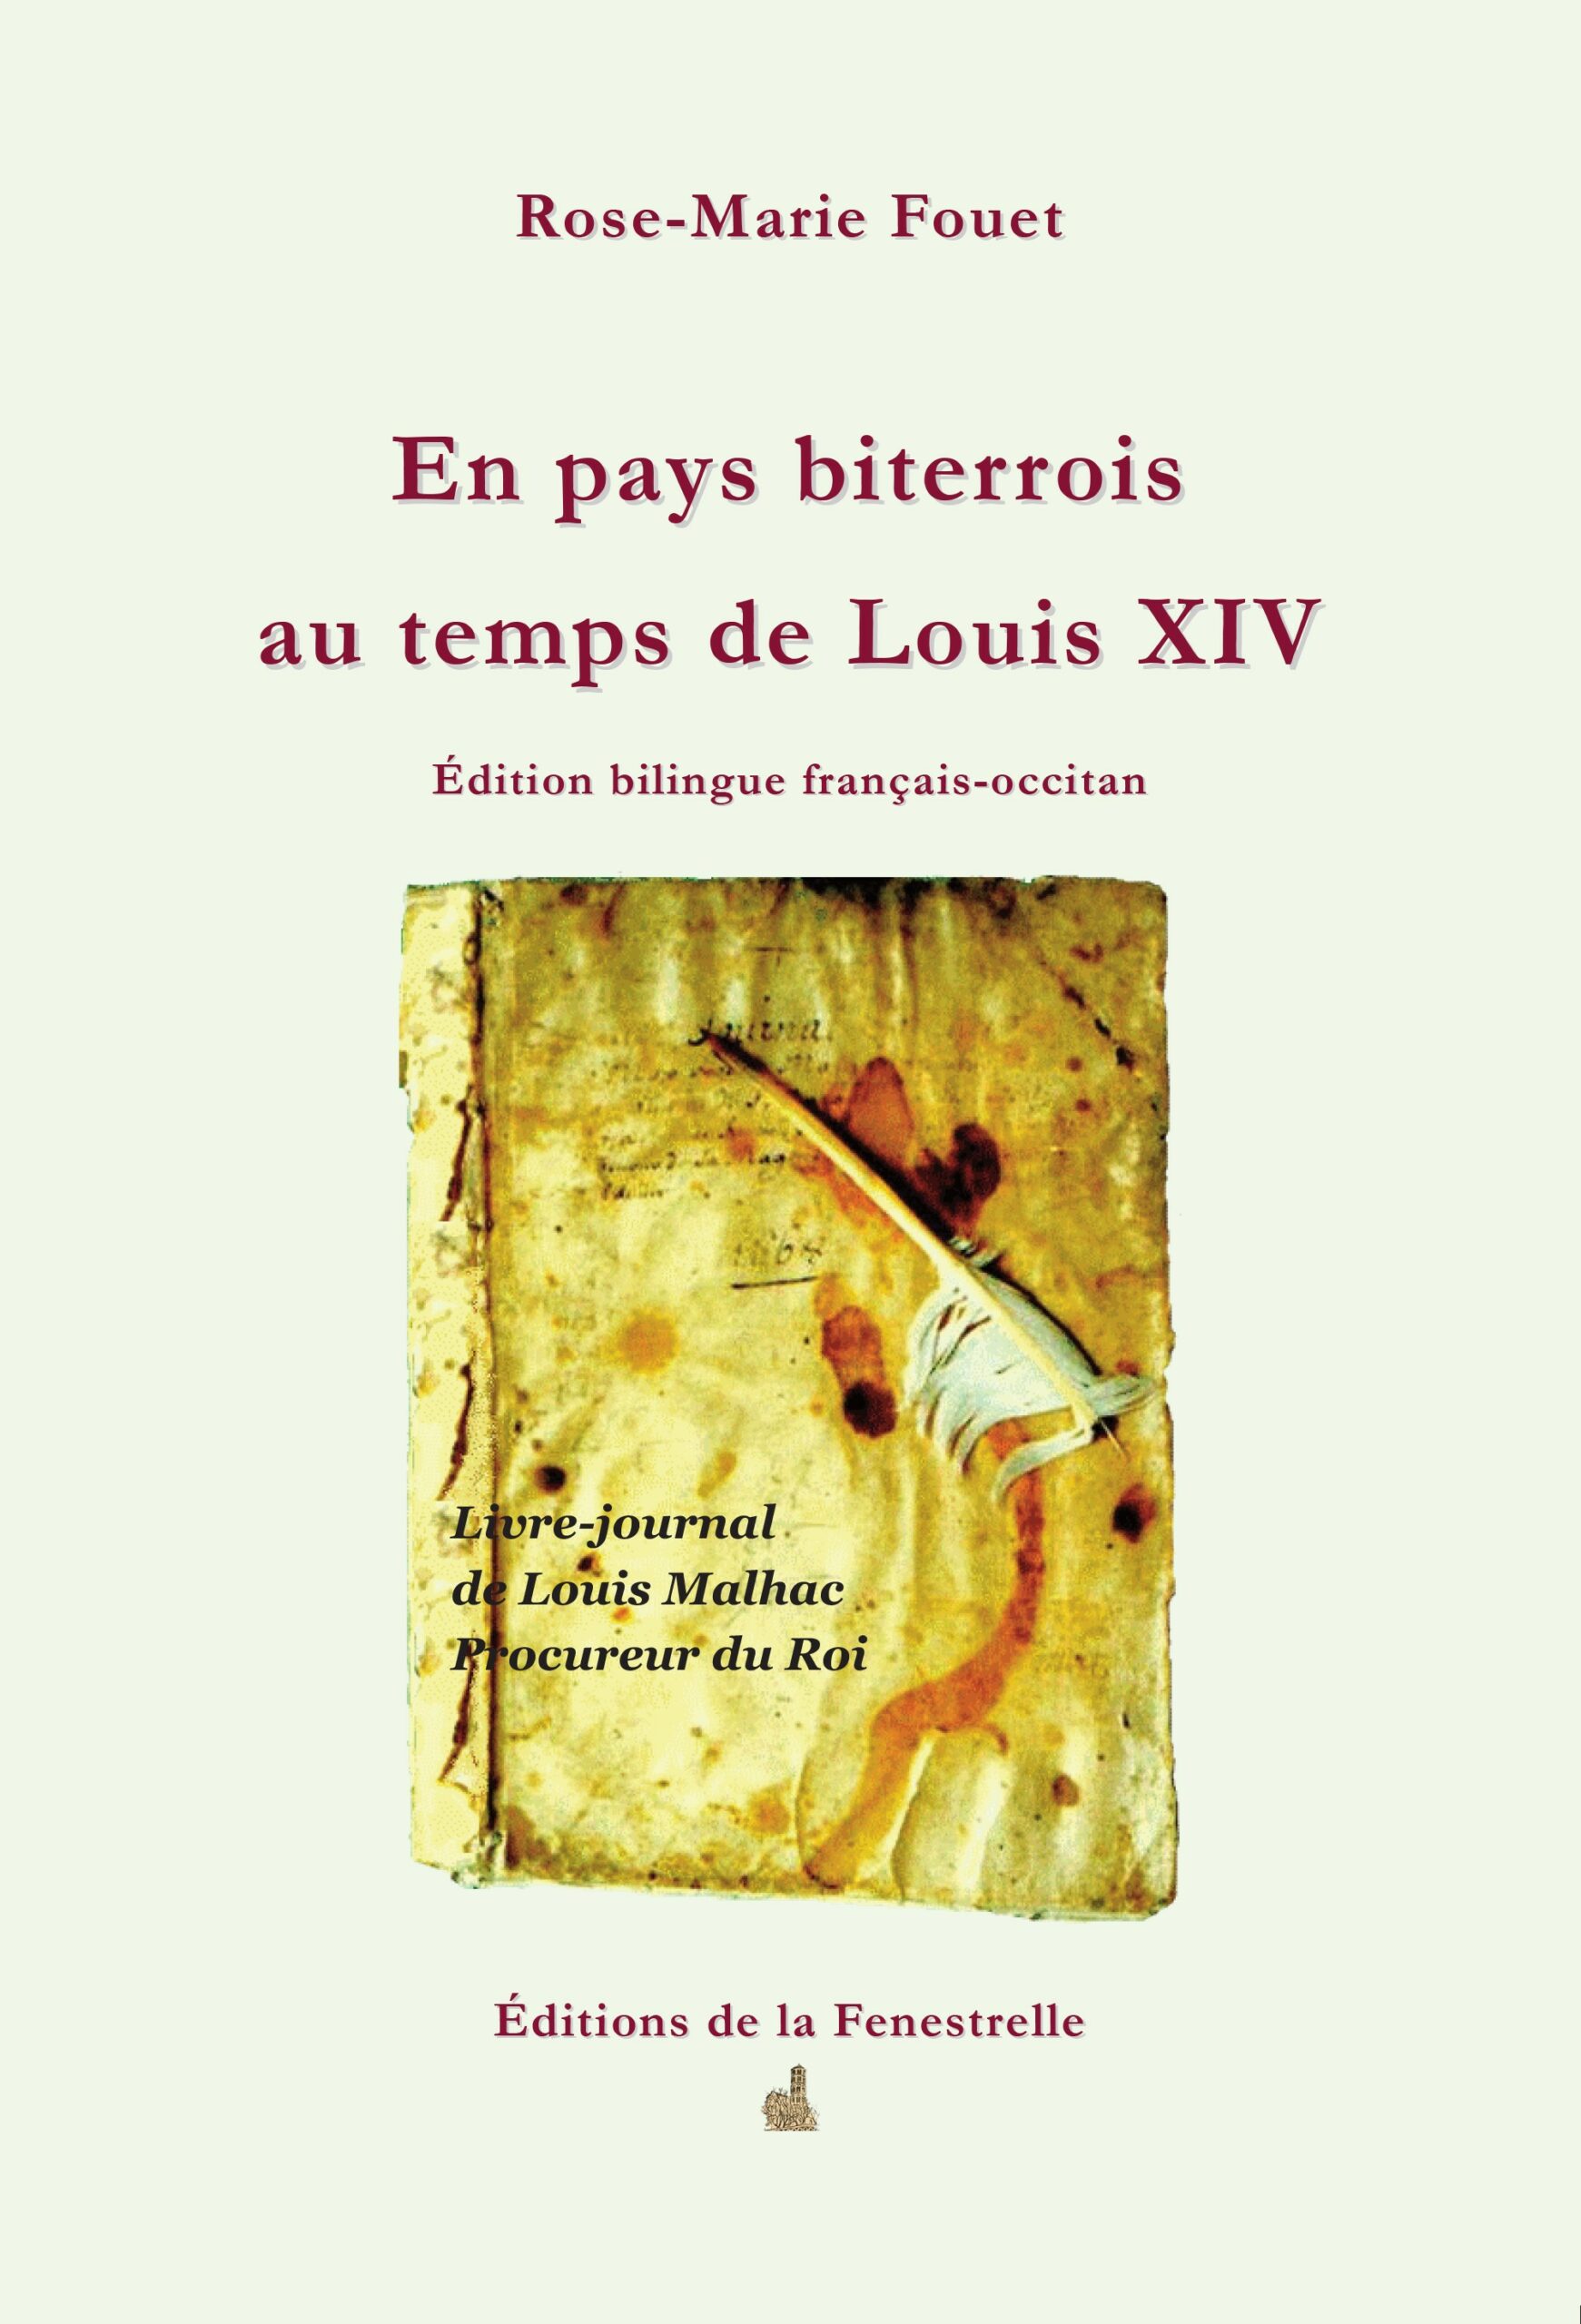 En pays biterrois au temps de Louis XIV - Editions de la Fenestrelle